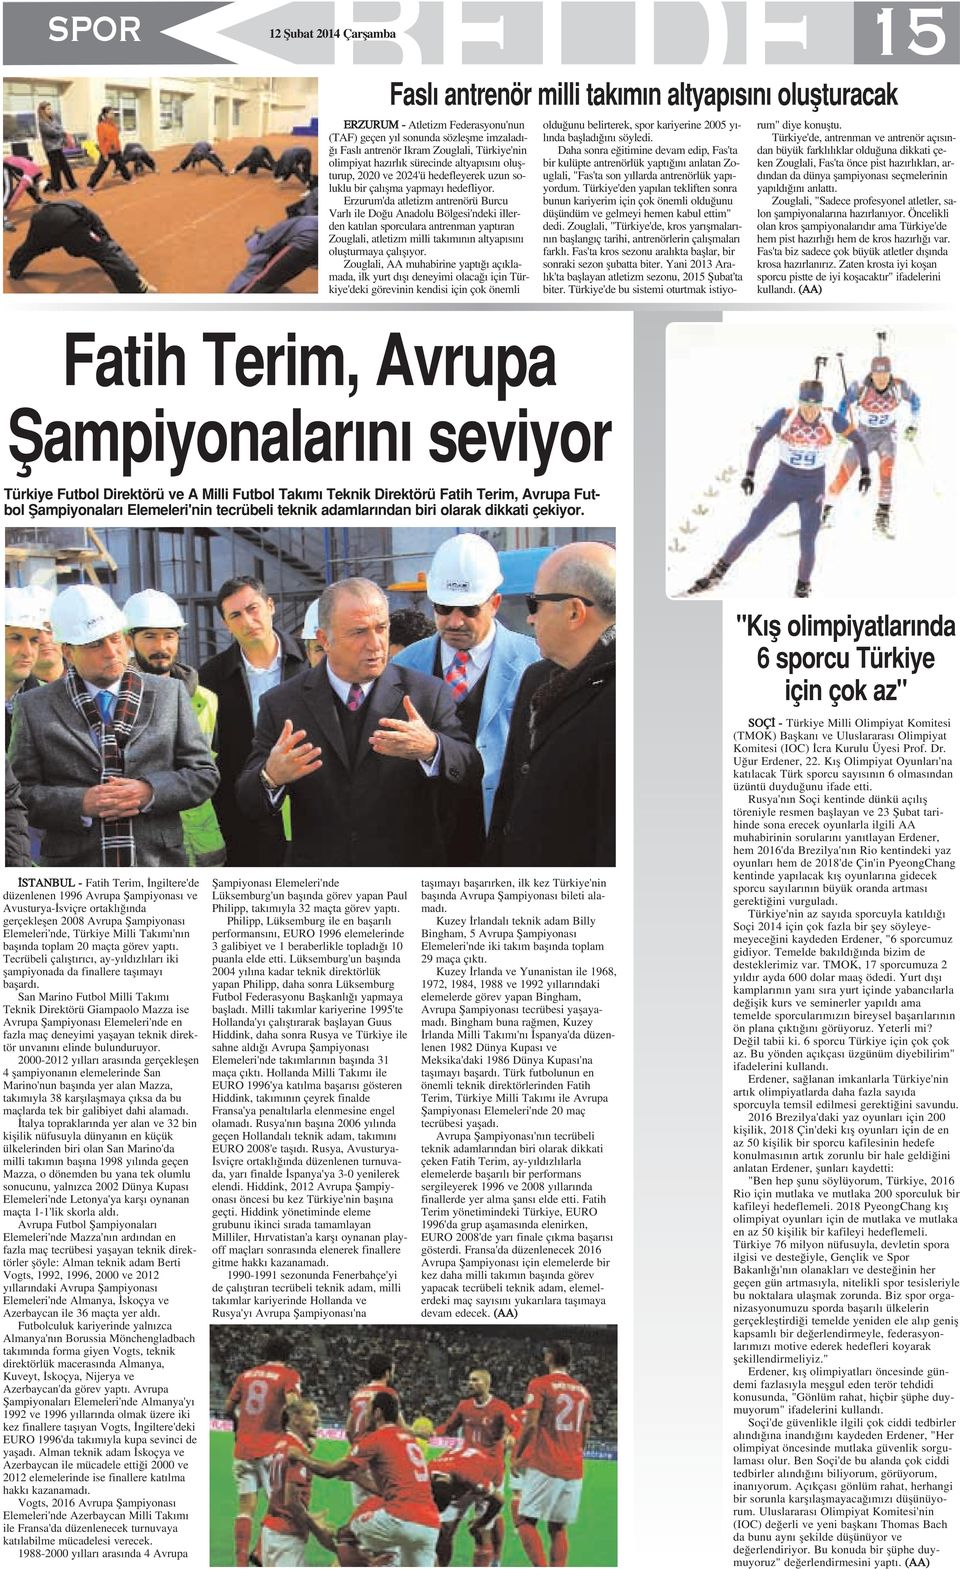 Erzurum'da atletizm antrenörü Burcu Varl ile Do u Anadolu Bölgesi'ndeki illerden kat lan sporculara antrenman yapt ran Zouglali, atletizm milli tak m n n altyap s n oluflturmaya çal fl yor.